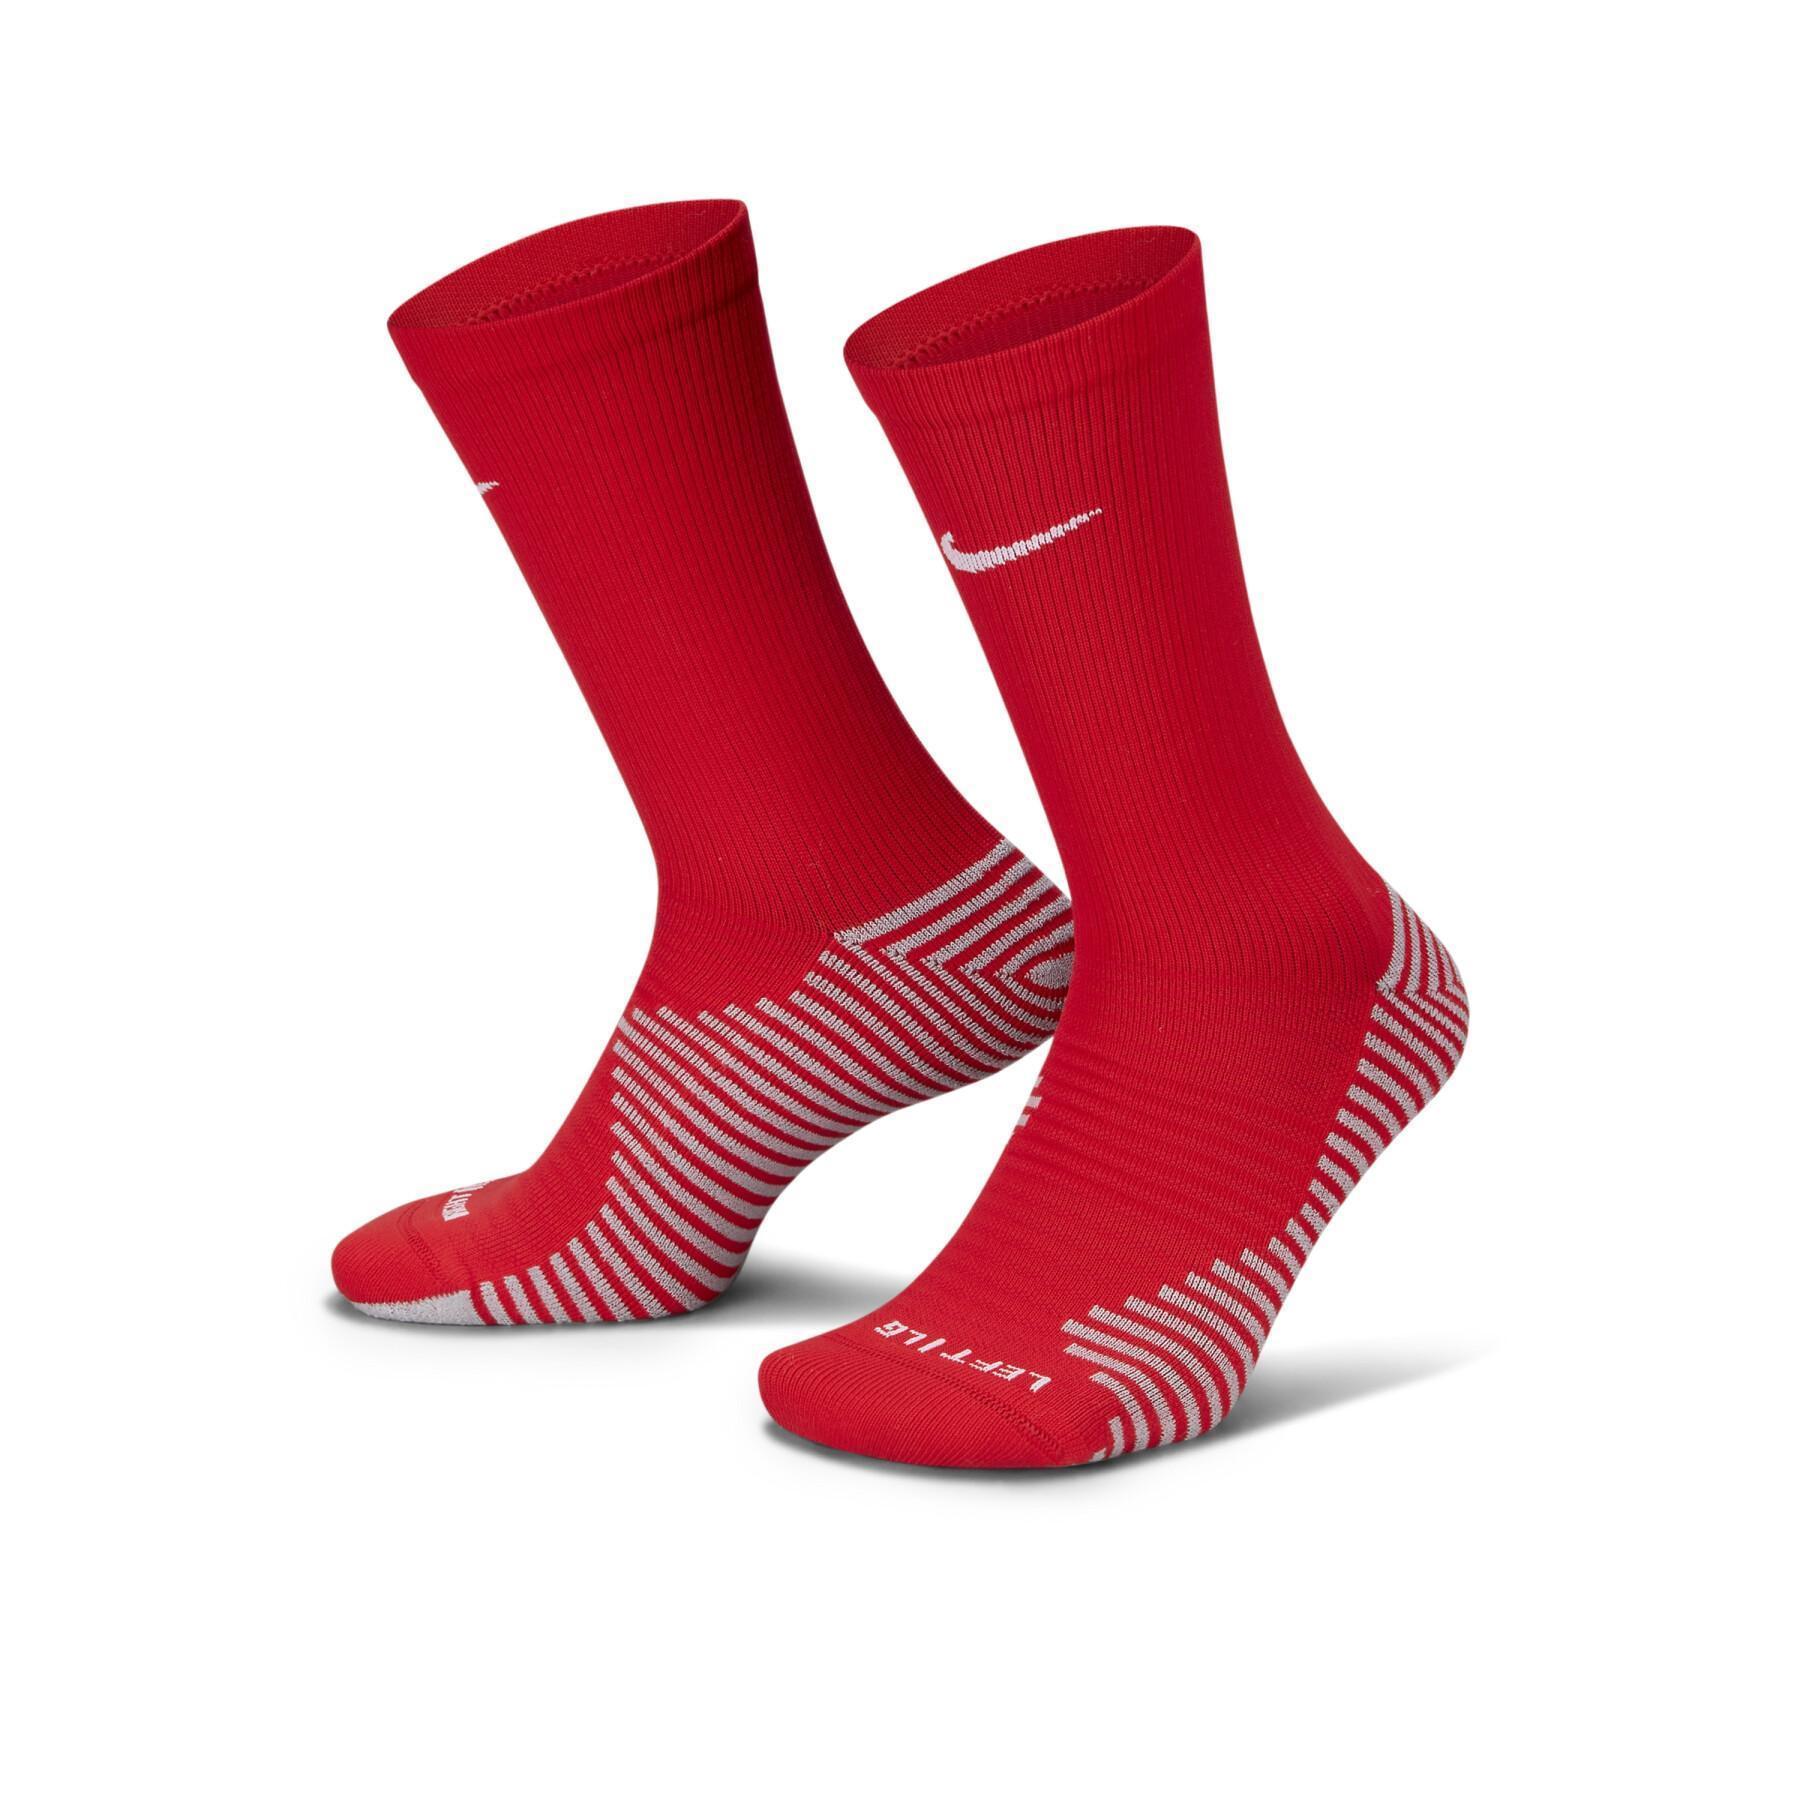 Socks Nike Strike - Socks - Men's wear - Handball wear